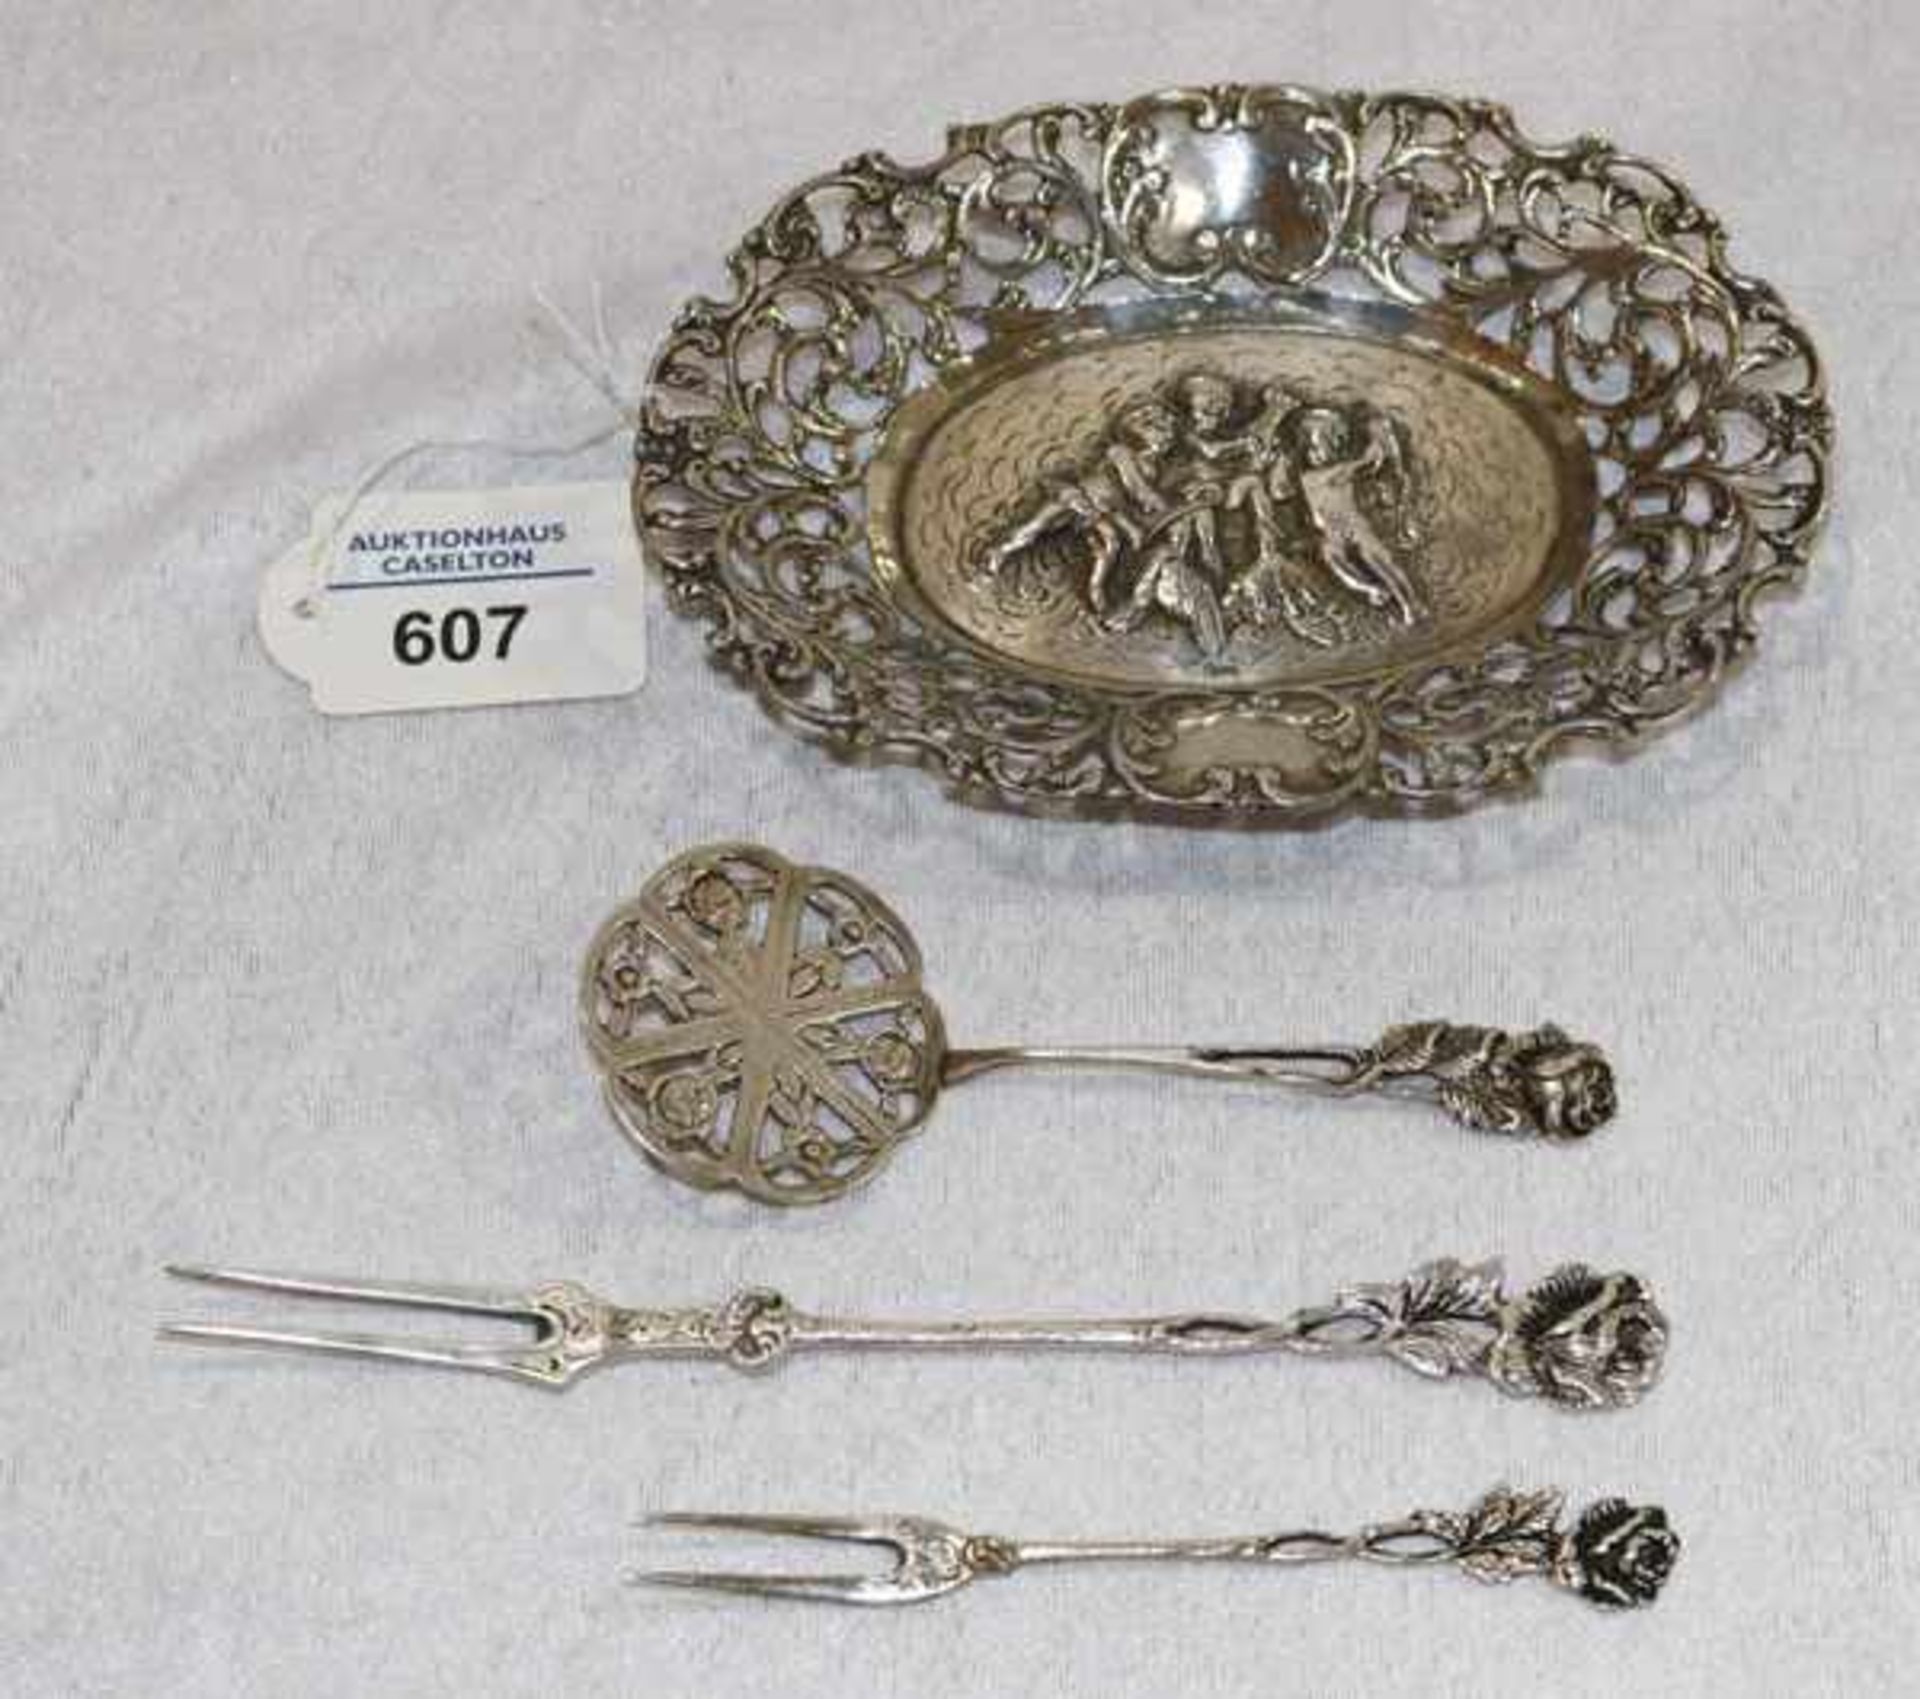 Schälchen mit Durchbruchrand mit reliefiertem Puttendekor, 800 Silber, L 15 cm, B 11 cm, und 3